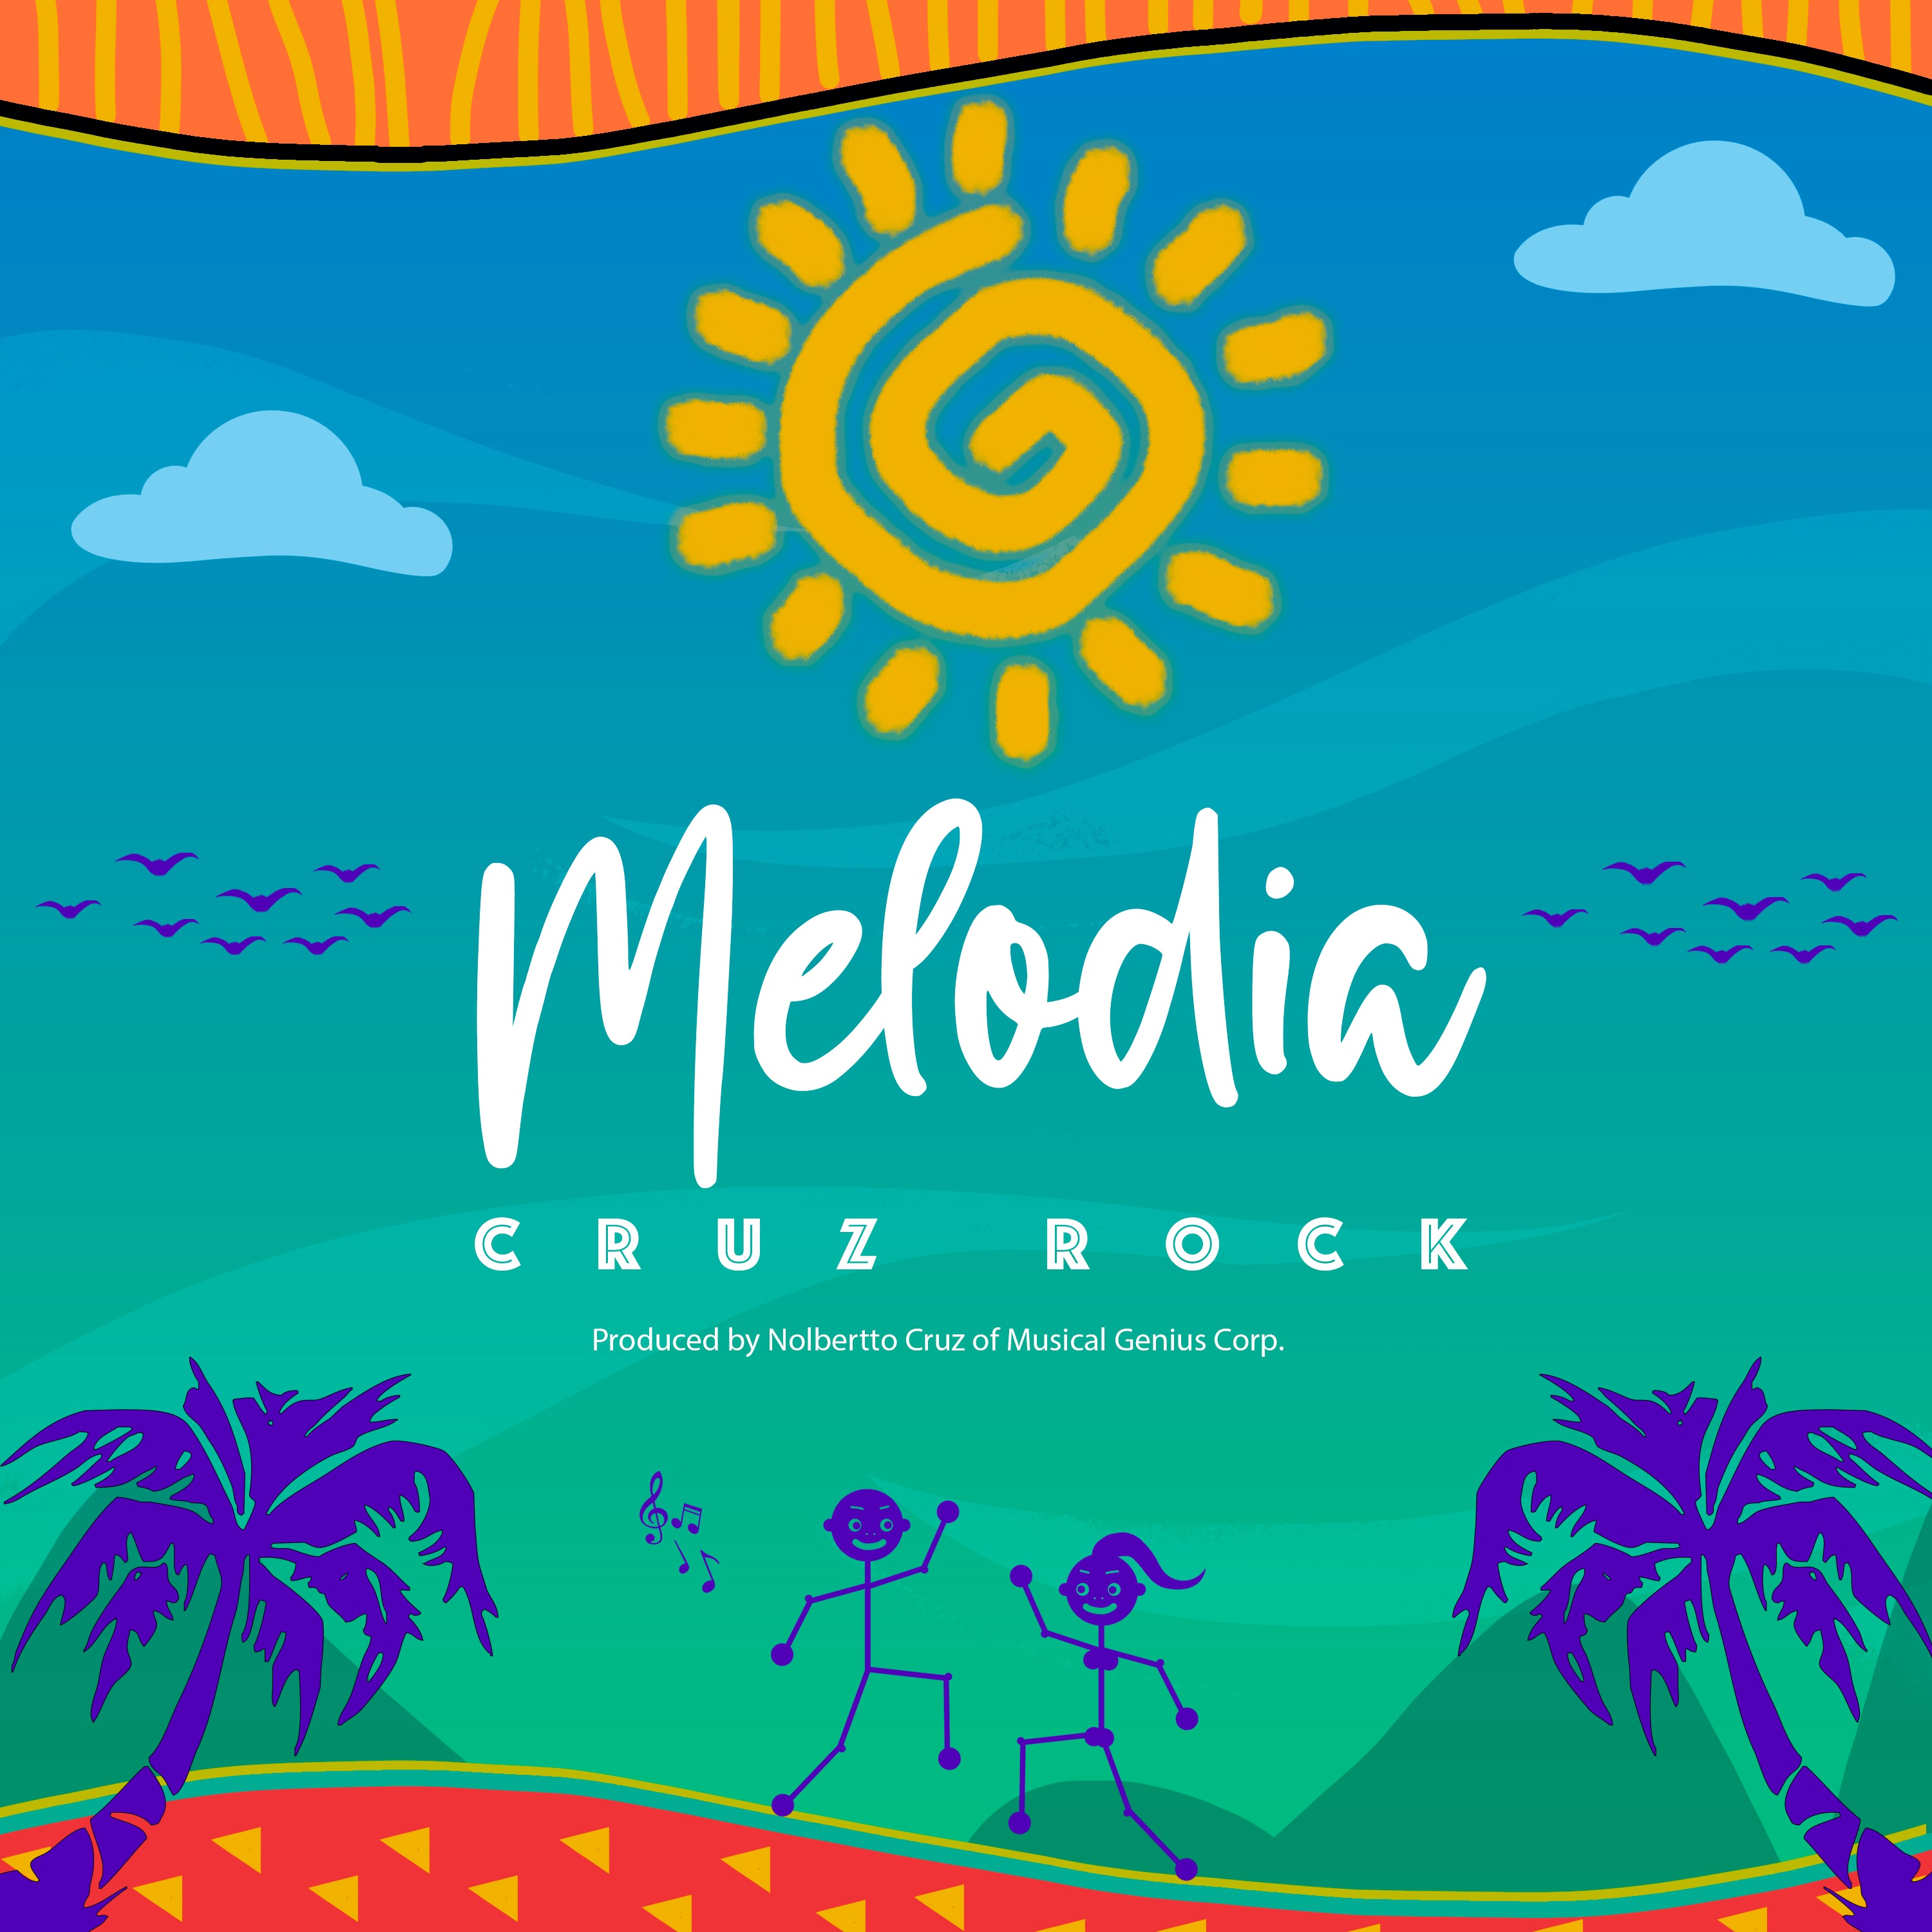 Tikiake Melodia by Cruz Rock